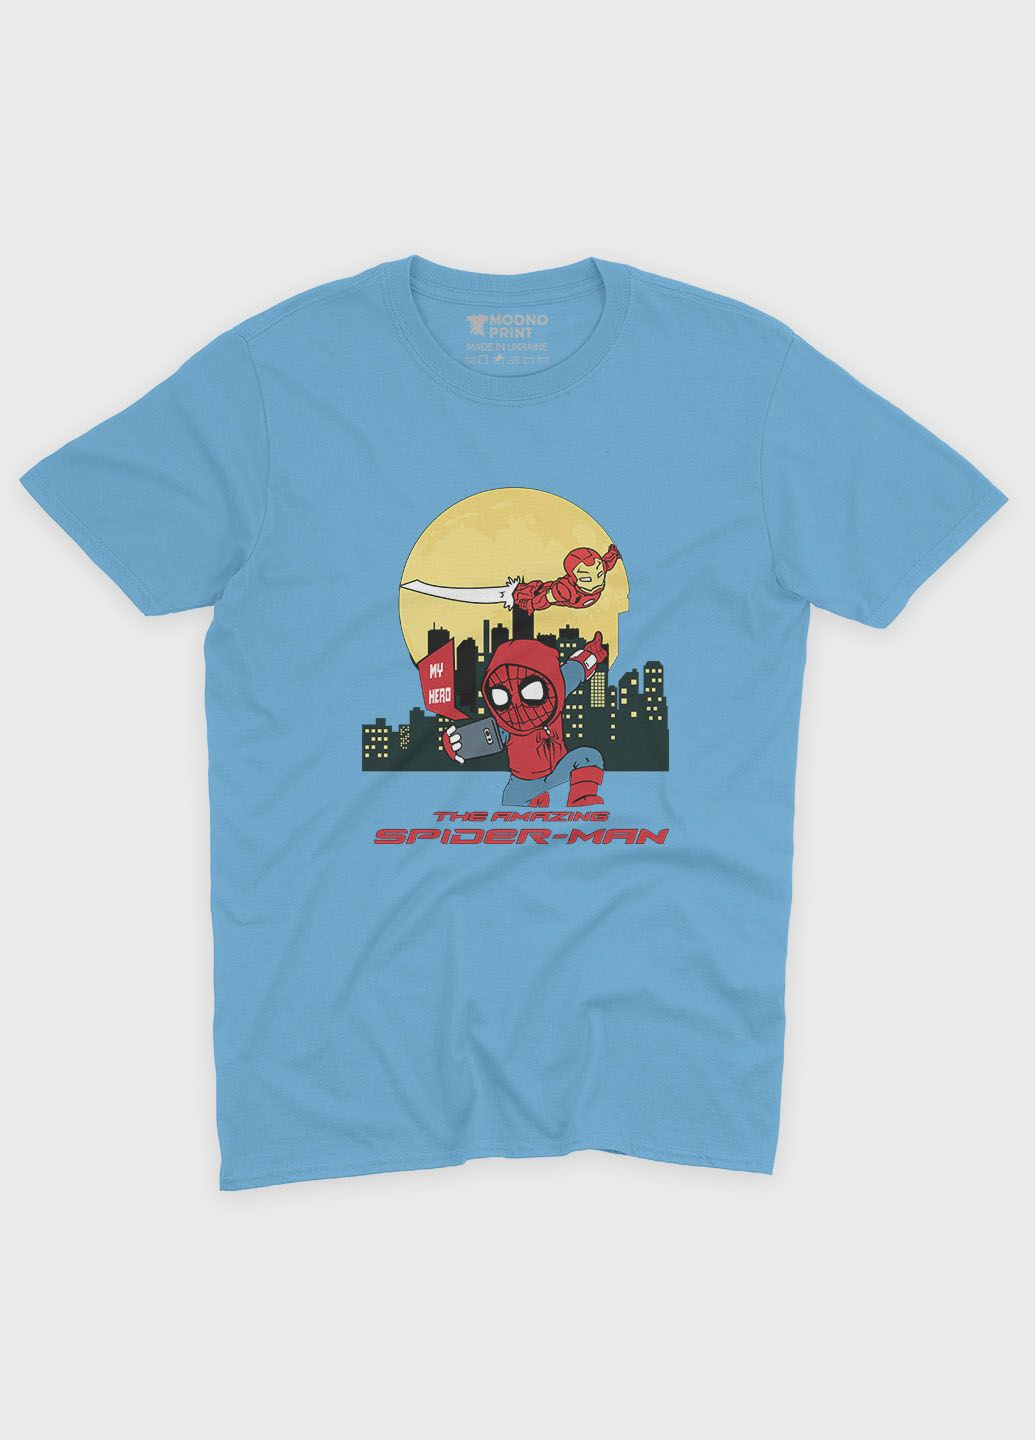 Блакитна демісезонна футболка для хлопчика з принтом супергероя - людина-павук (ts001-1-lbl-006-014-058-b) Modno